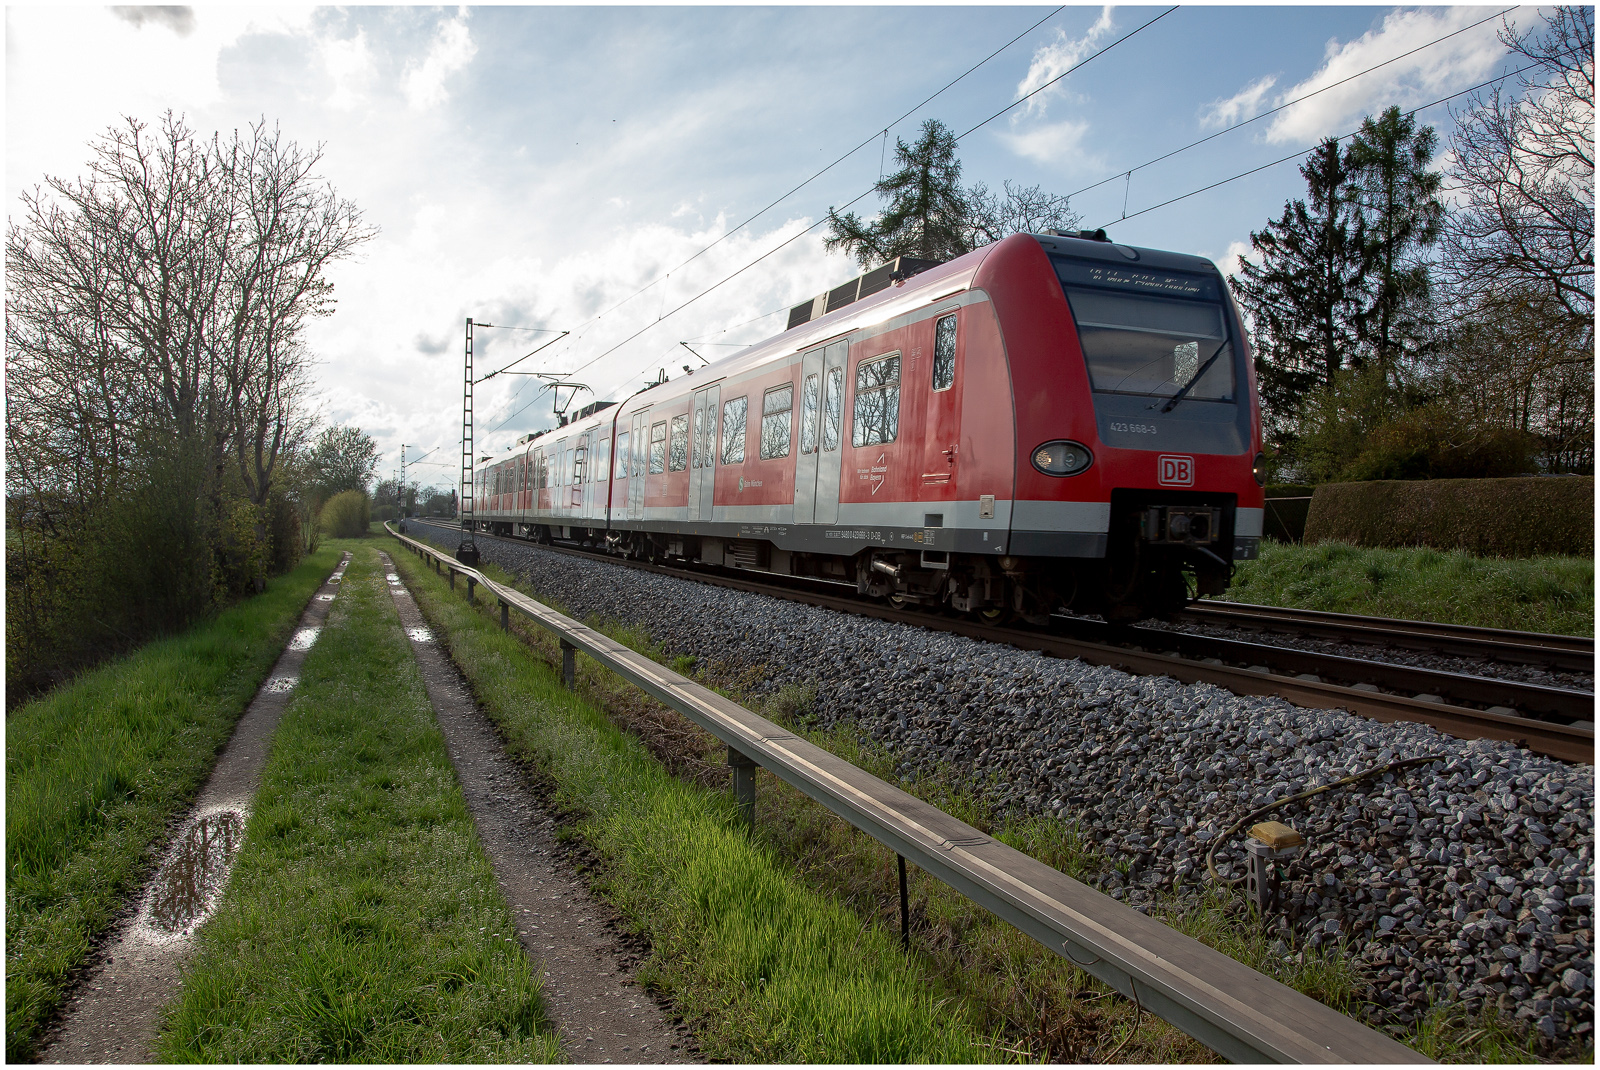 S-Bahn München auf Umwegen